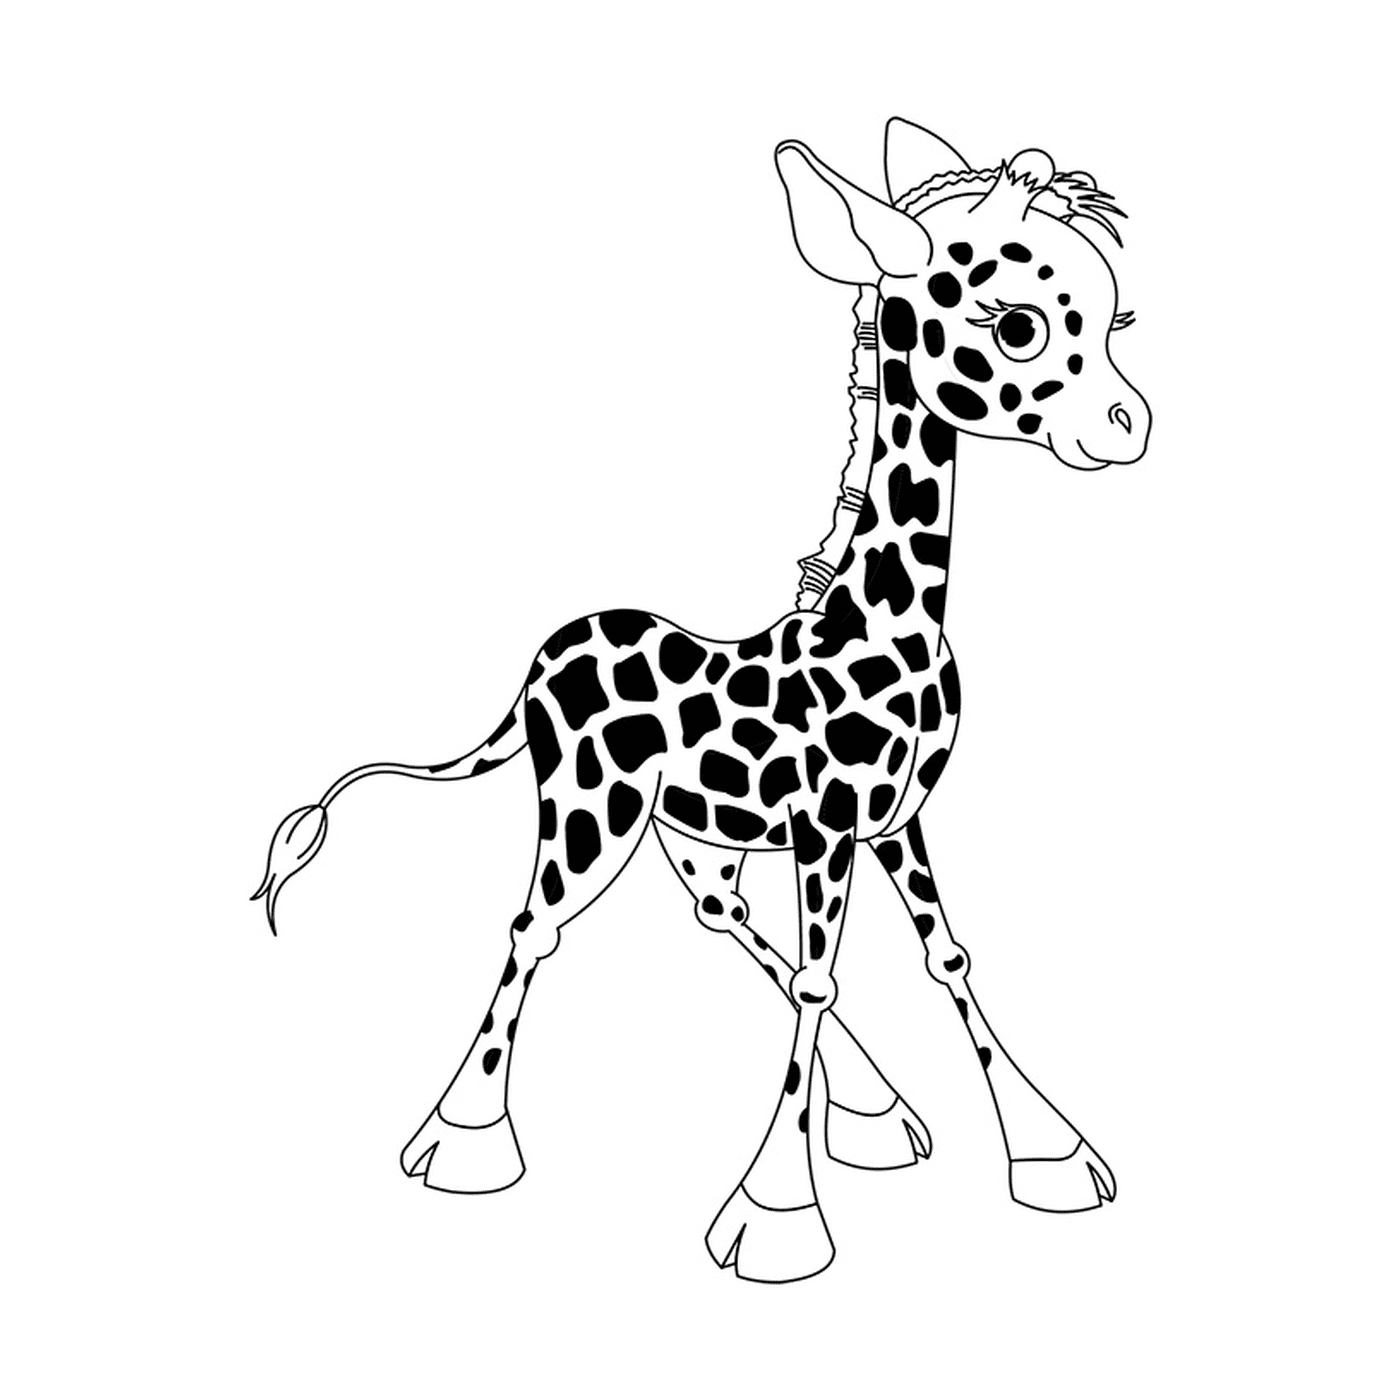  Ein Giraffenbaby steht 